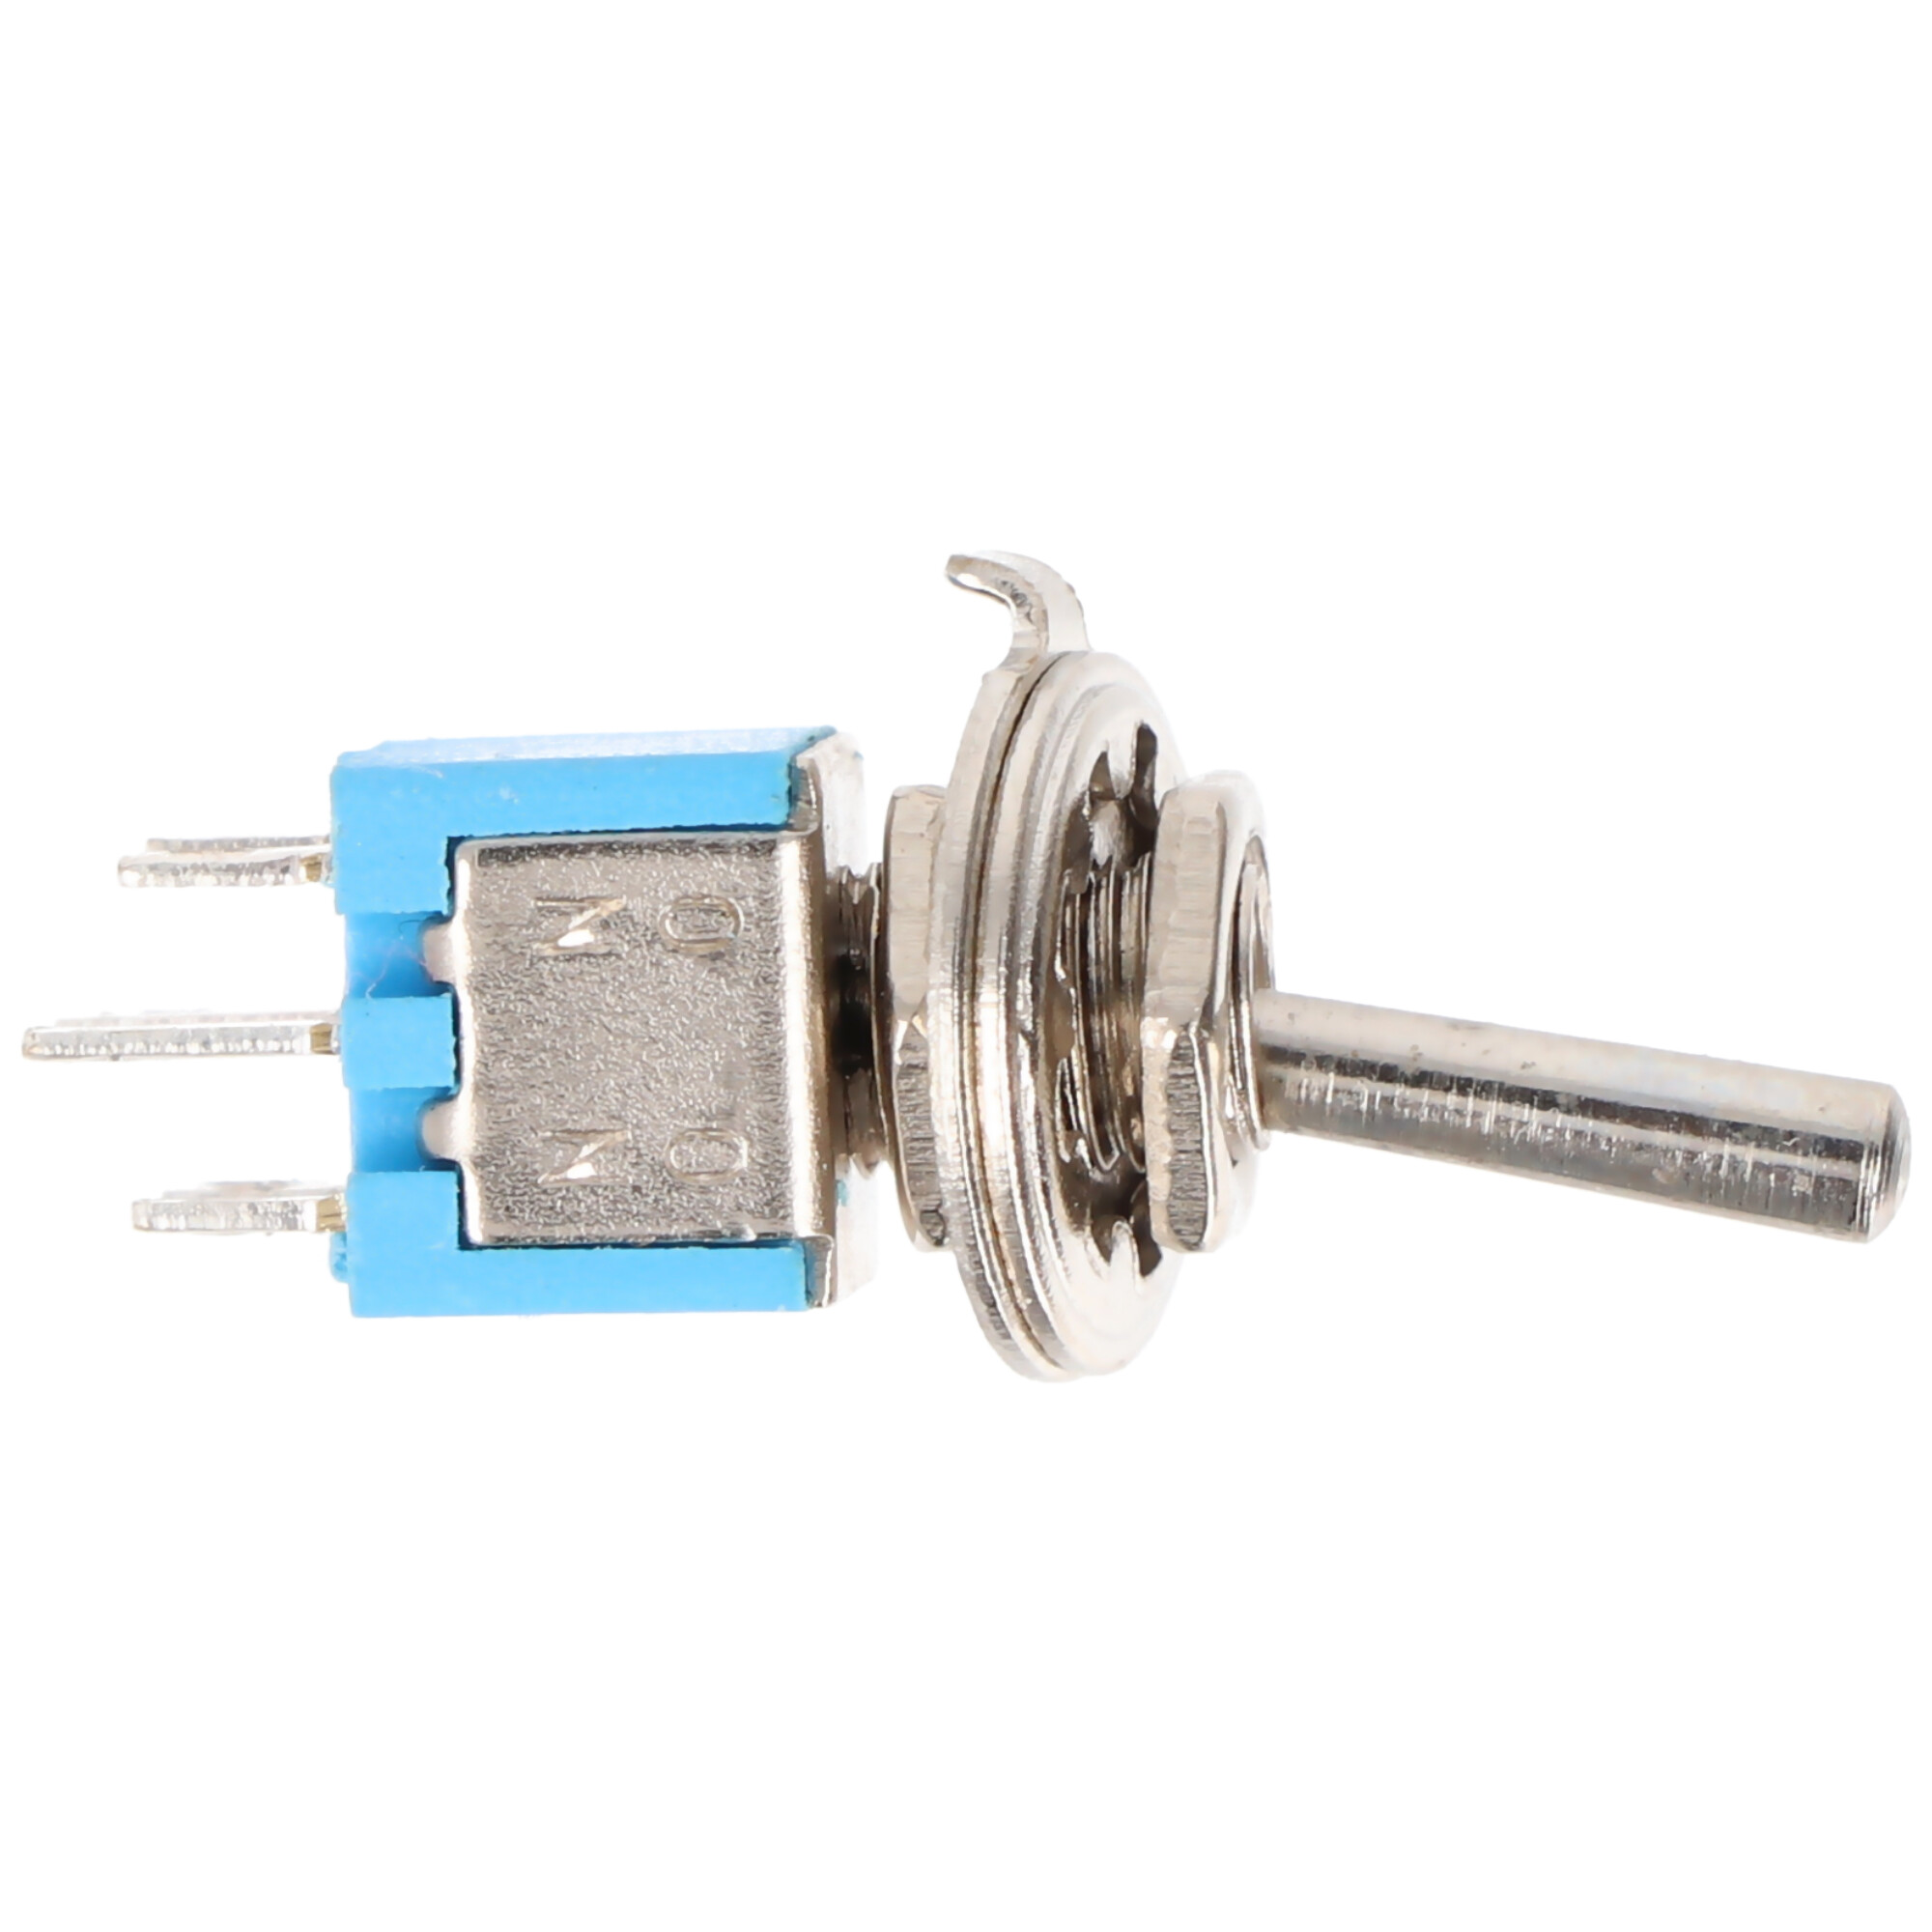 Goobay Kippschalter Miniatur, 2x UM, 6 Pins, blaues Gehäuse - ideal für den Bereich DIY oder den Modellbau